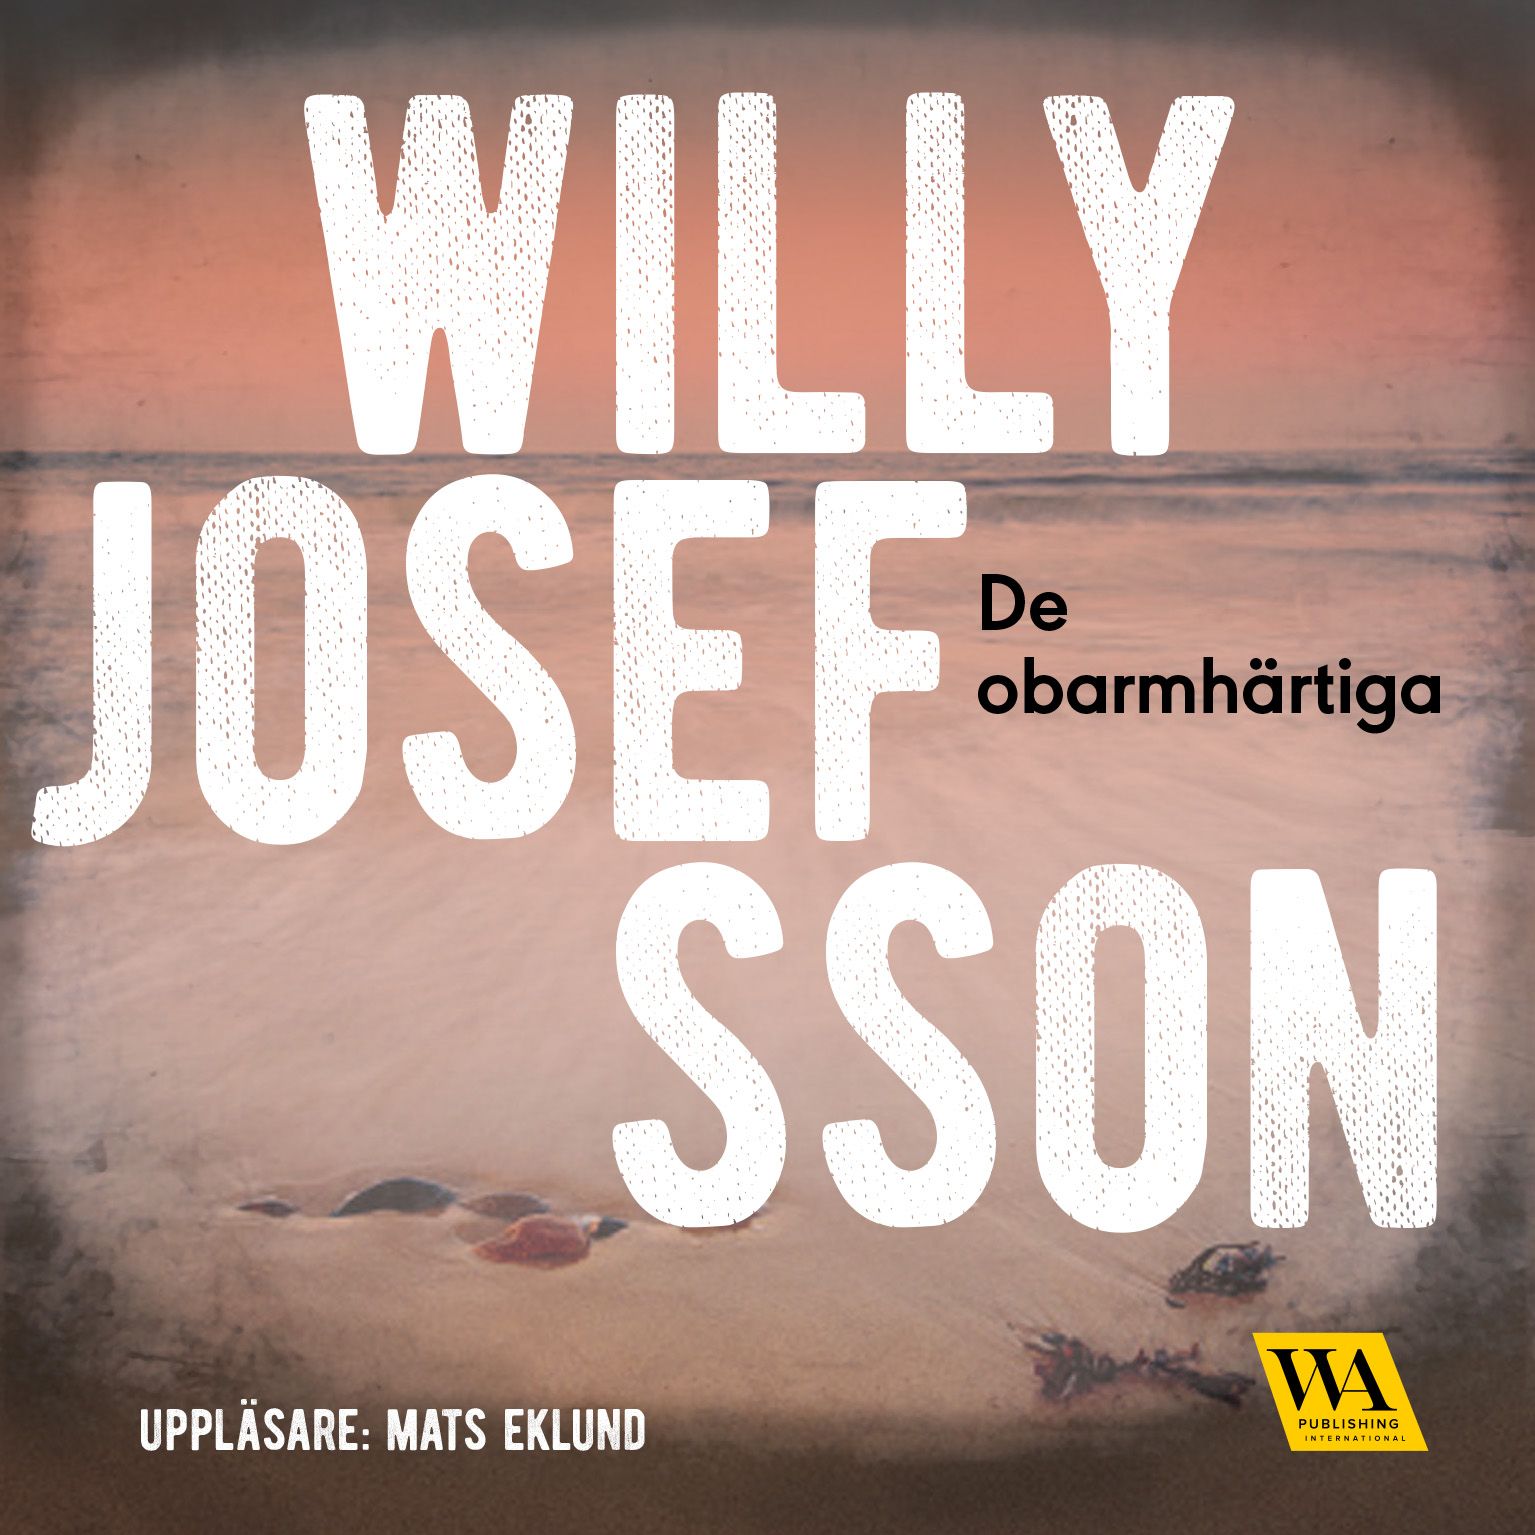 De obarmhärtiga, ljudbok av Willy Josefsson